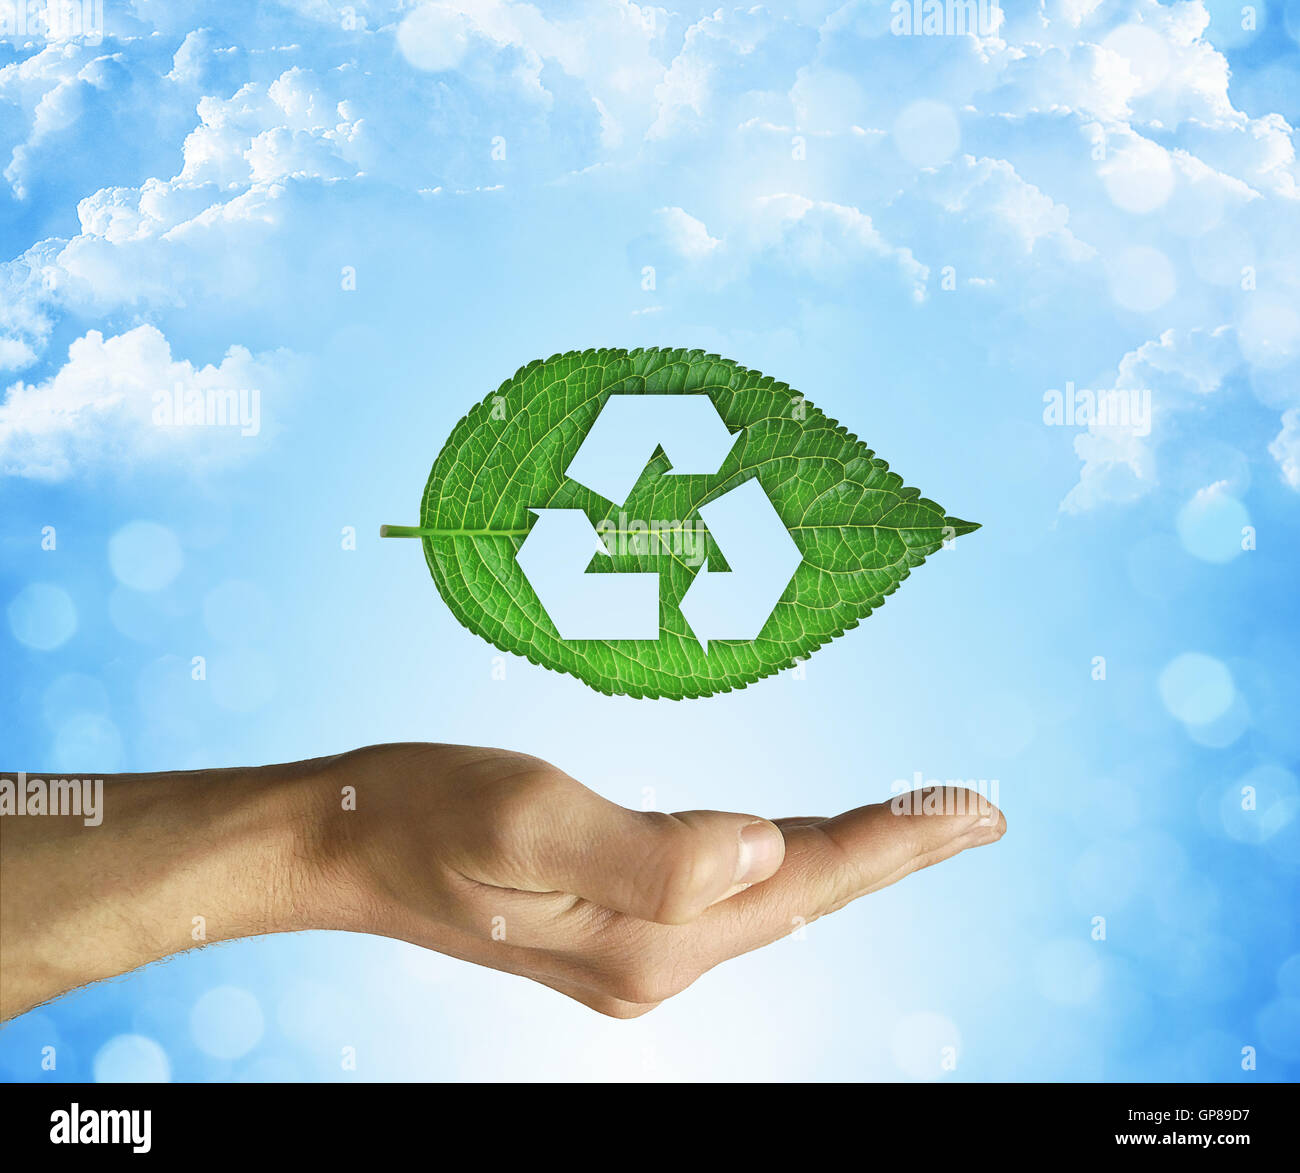 Ouvert main tenant une feuille verte avec symbole de recyclage sur un fond de ciel bleu. Développement durable et environnement convivial Banque D'Images